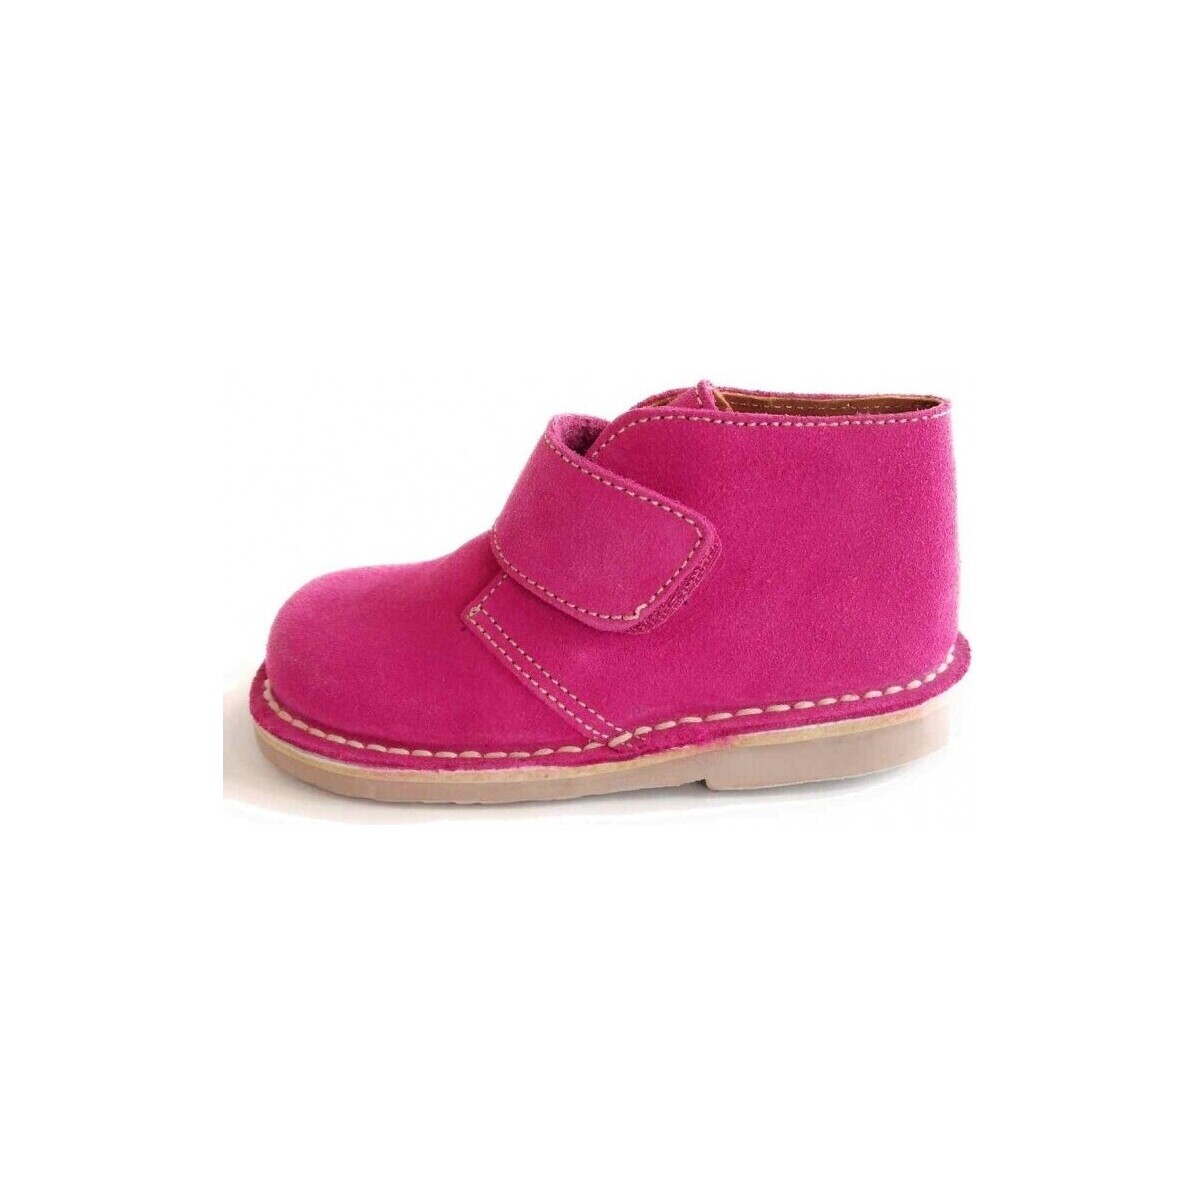 Pantofi Cizme Colores 16117-18 roz